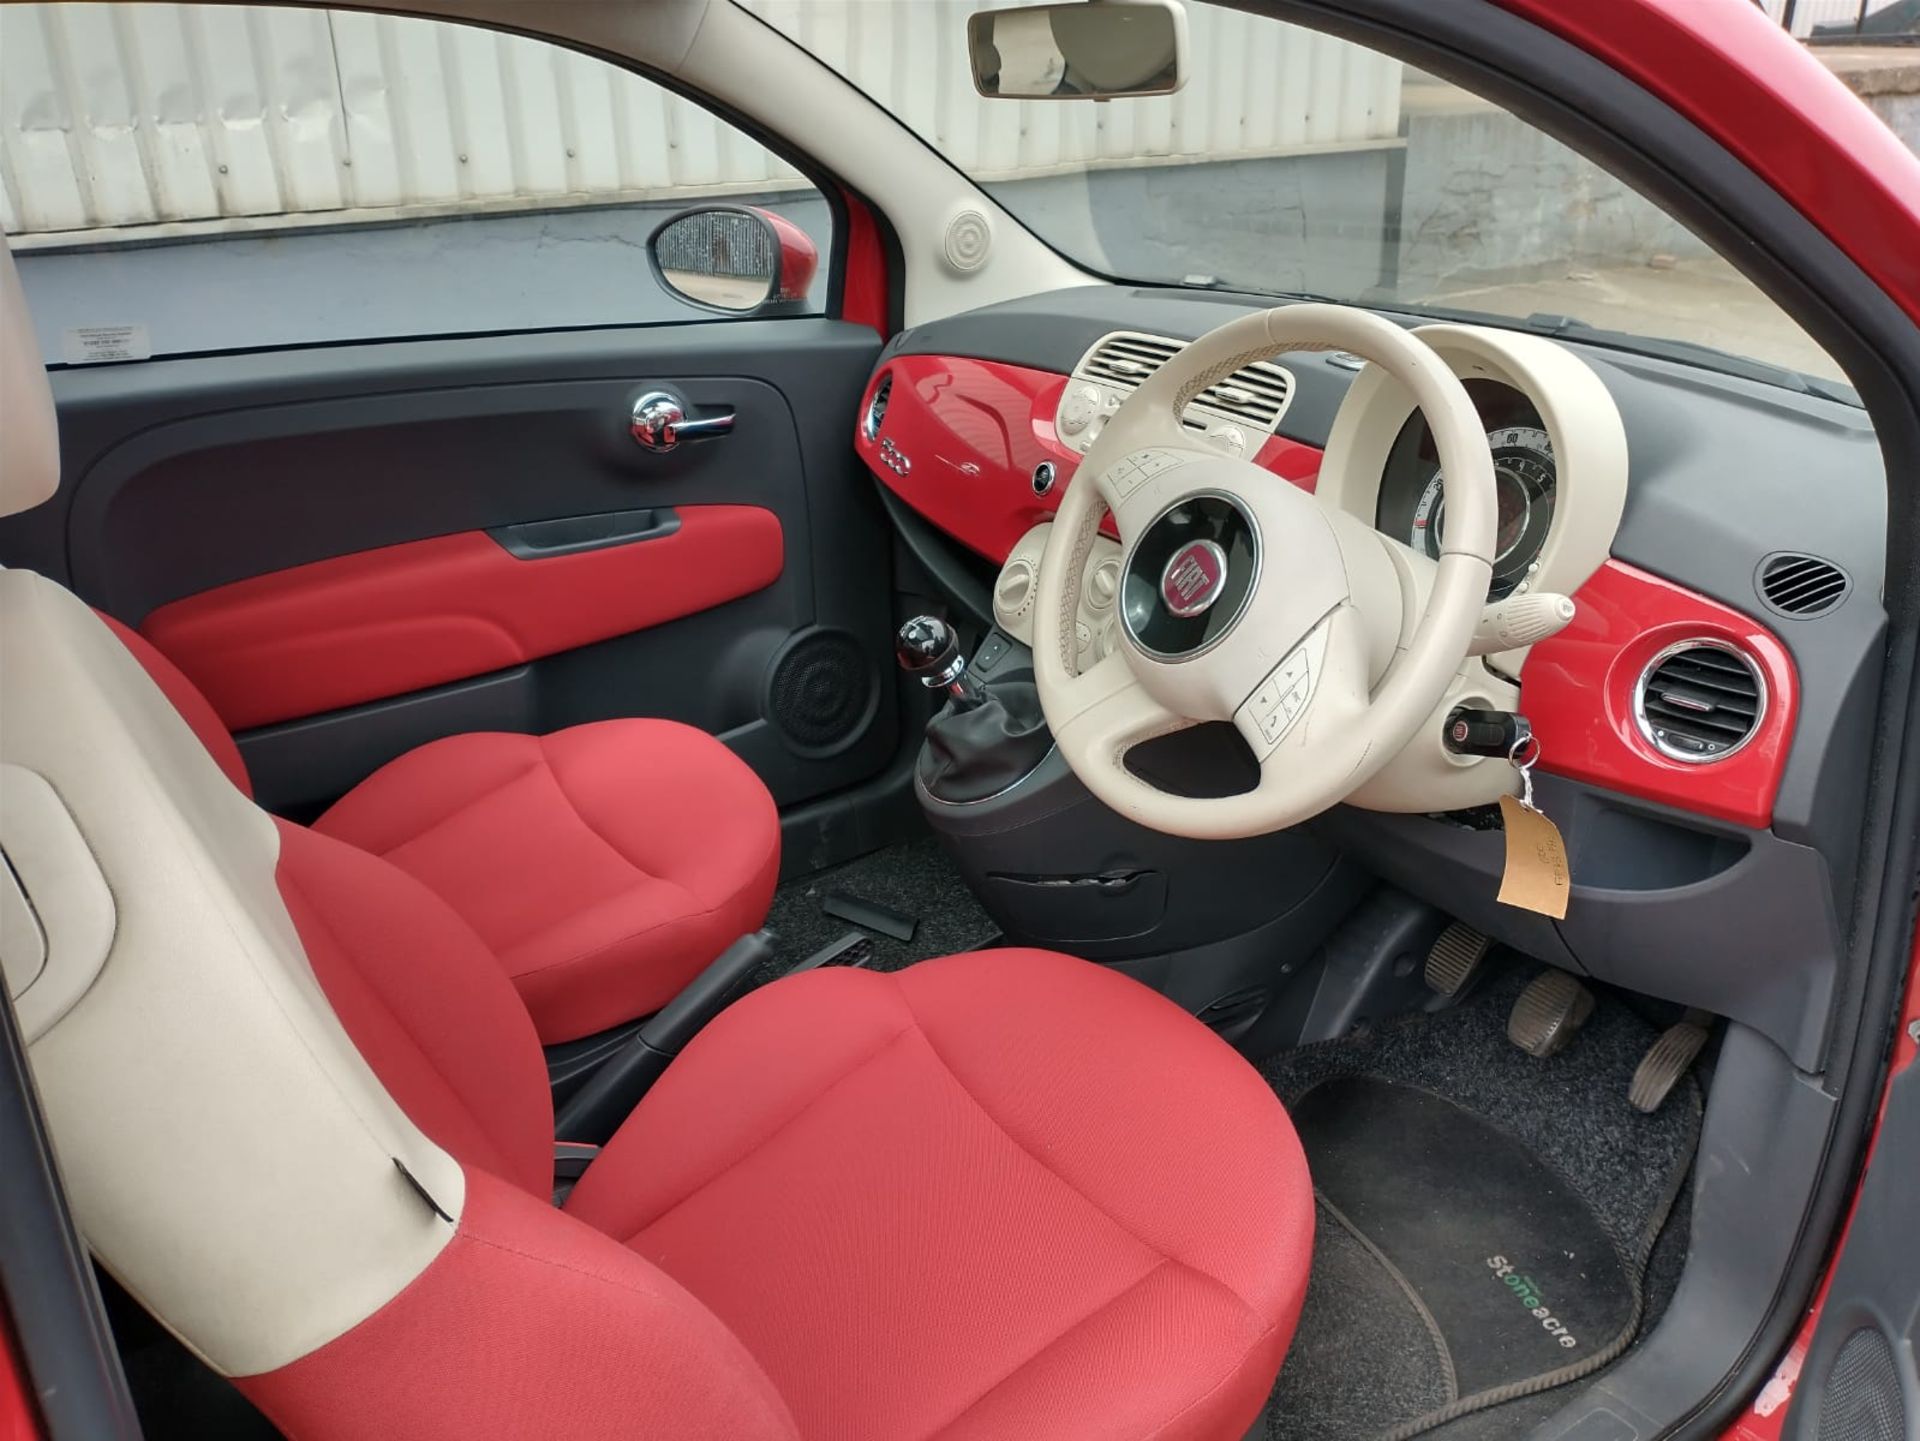 2013 Fiat 500 1.2 3Dr hatchback - Image 11 of 13